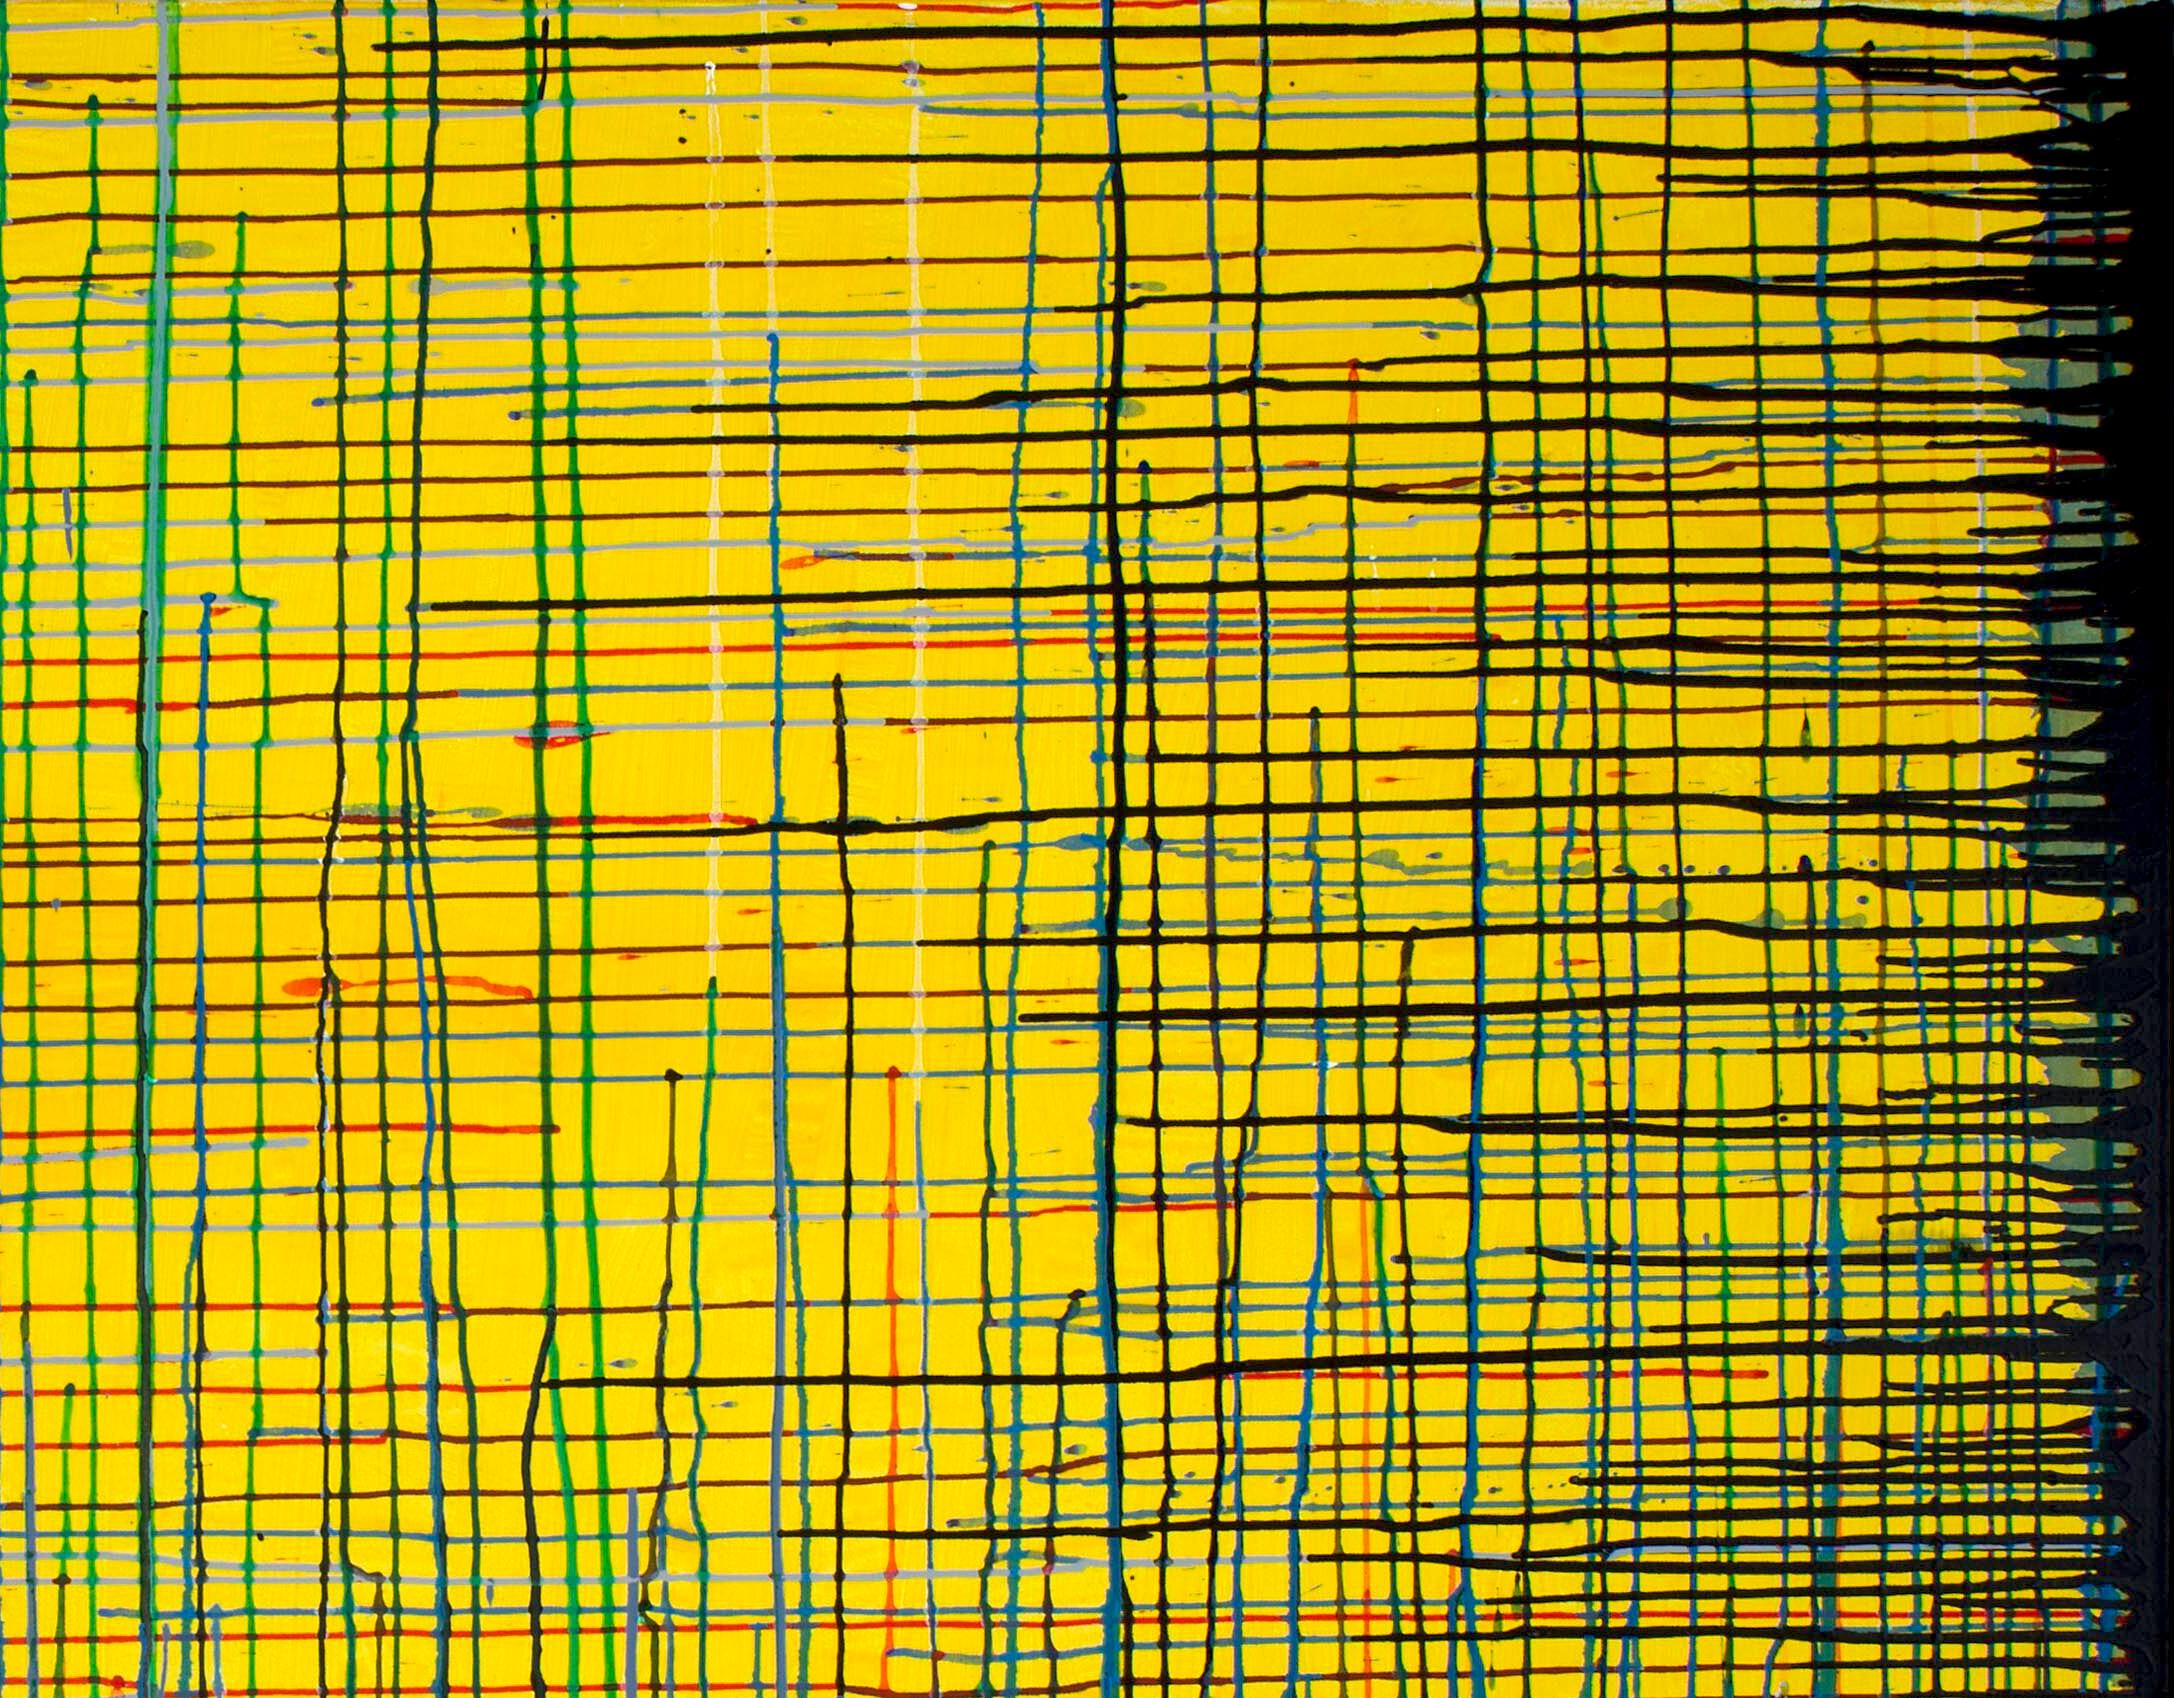 Artiste : Detlef E. Aderhold

Médium : Médias mixtes sur toile

Edition : Peinture abstraite originale en jaune, bleu, rouge et noir


À propos de l'artiste :

Detlef E. Aderhold est un peintre abstrait contemporain d'Allemagne.

